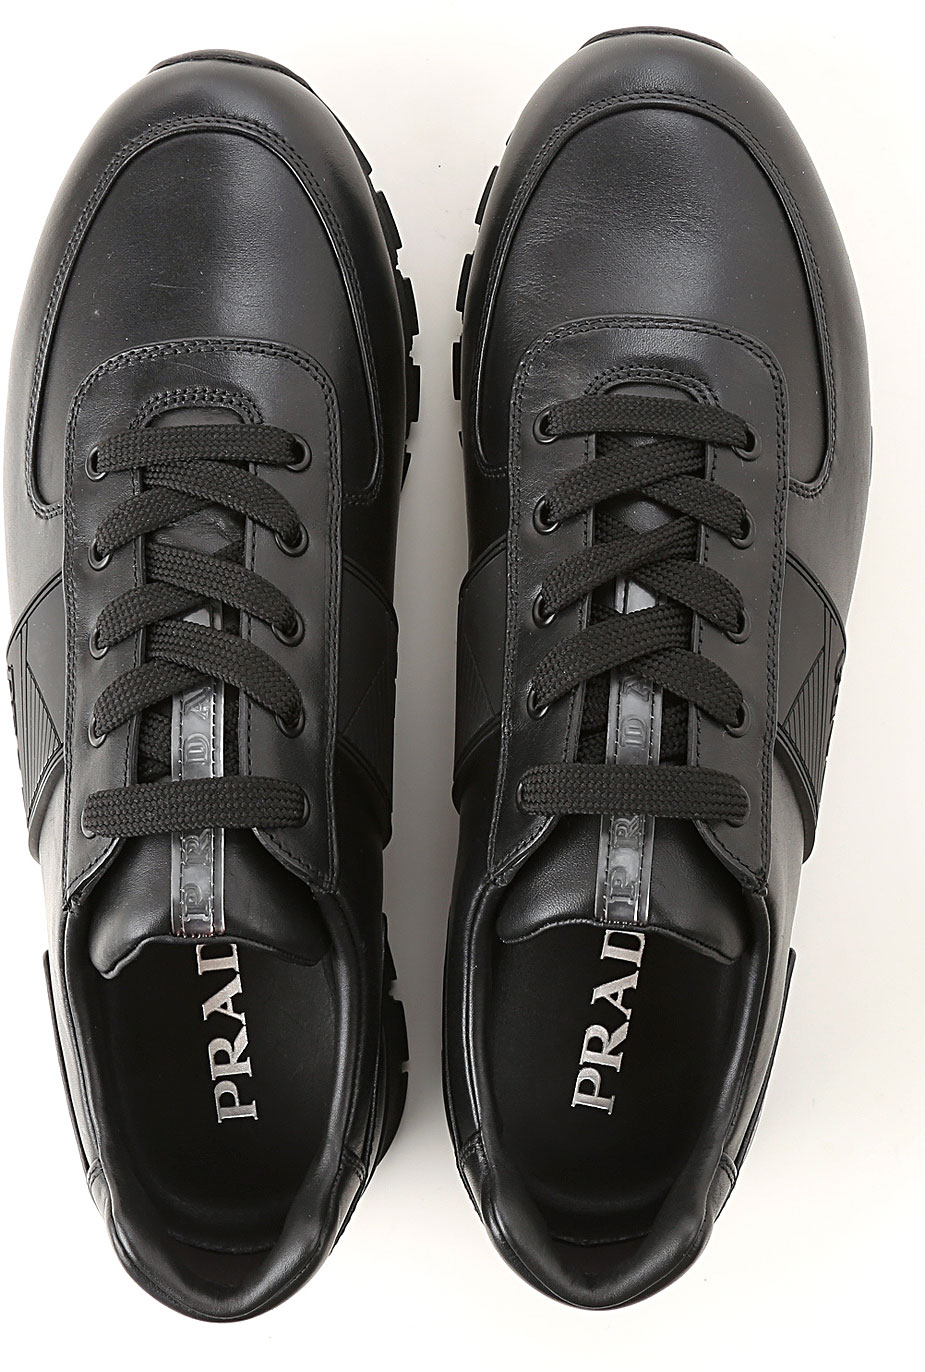 Mens Shoes Prada, Style code: 4e3198-309u-002